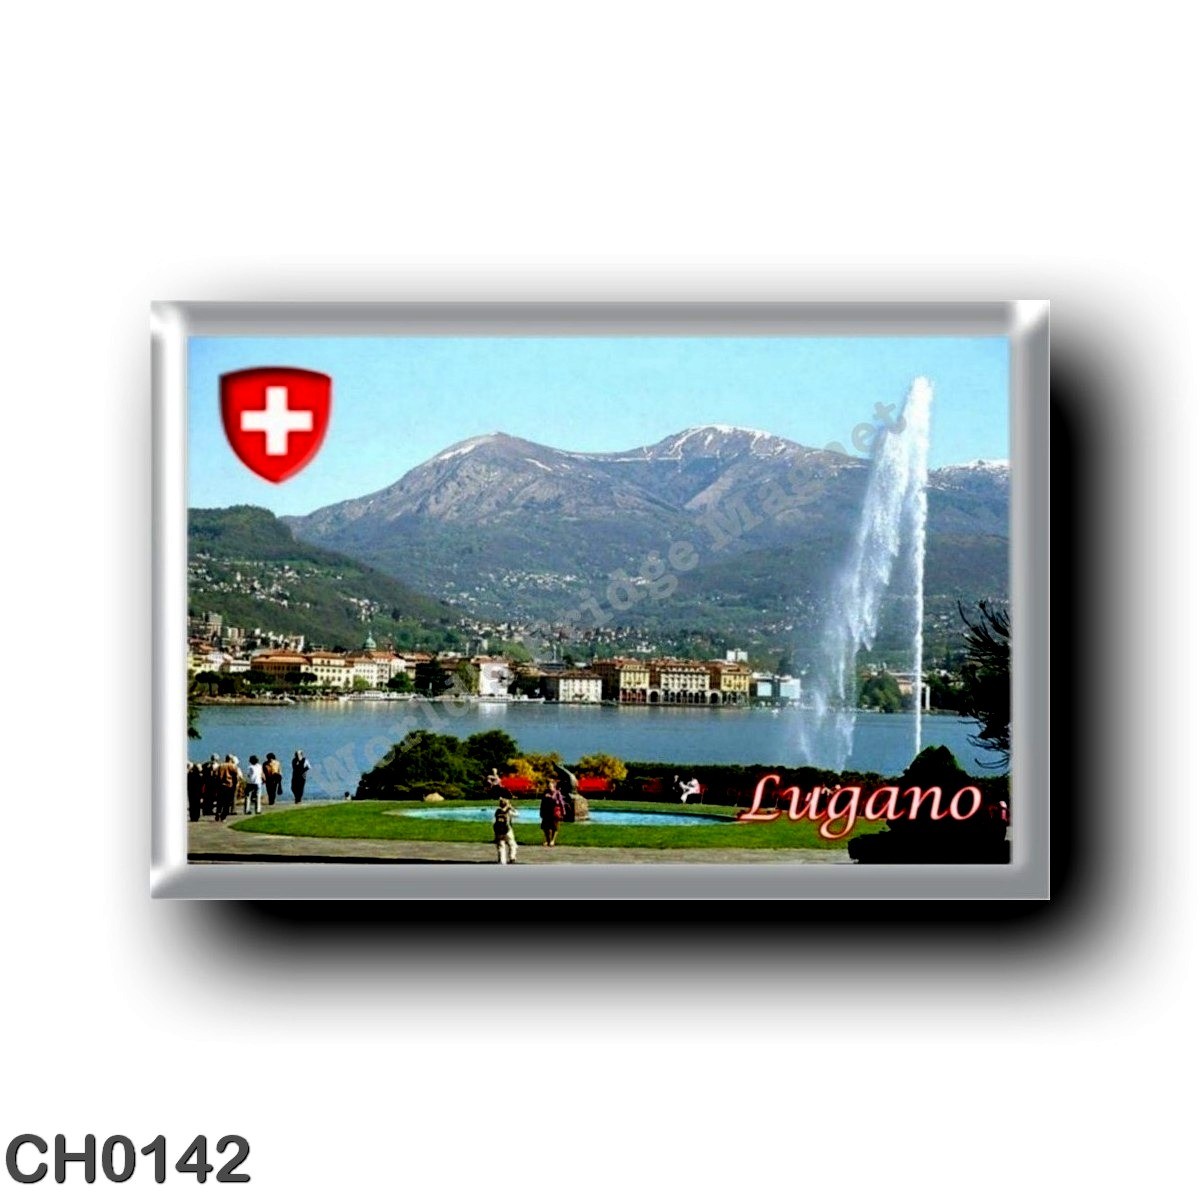 LUGANO SWITZERLAND SWISS CANTON OF TICINO BREGANZONA JUMBO FRIDGE MAGNET